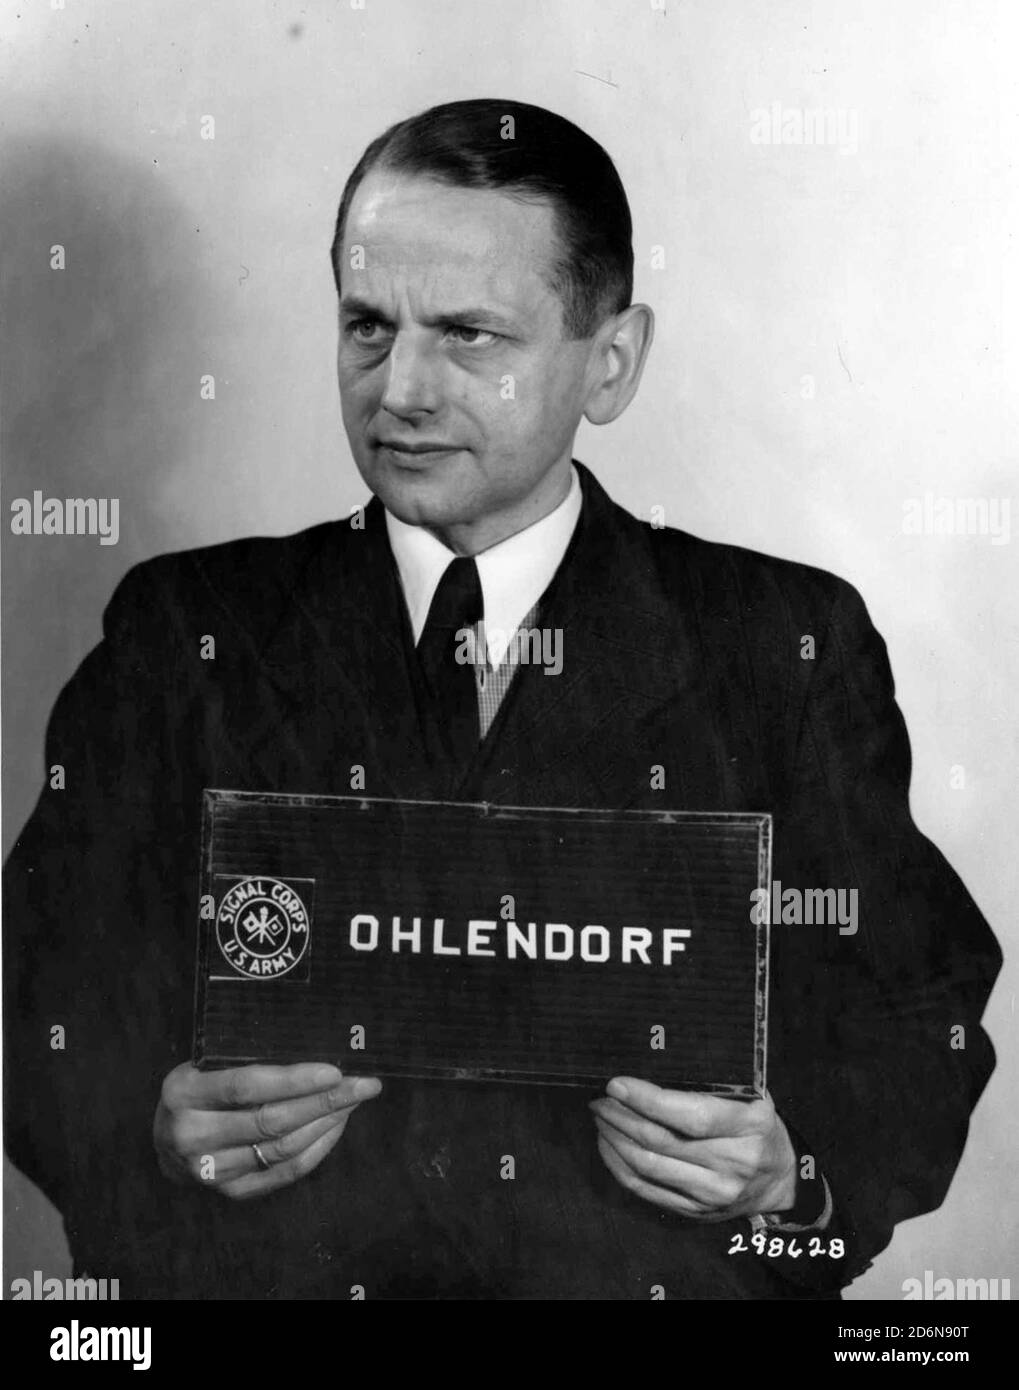 Otto Ohlendorf (1907 – 1951), funzionario tedesco delle SS e responsabile dell'olocausto durante l'era nazista, capo della Sicherheitsdienst (SD) Inland, responsabile dell'intelligence e della sicurezza in Germania. Nel 1941, Ohlendorf fu nominato comandante di Einsatzgruppe D, che perpetrò un omicidio di massa in Moldavia, Ucraina meridionale, Crimea e, nel 1942, nel Caucaso settentrionale. Fu processato al processo di Einsatzgruppen, condannato e giustiziato nel 1951 Foto Stock